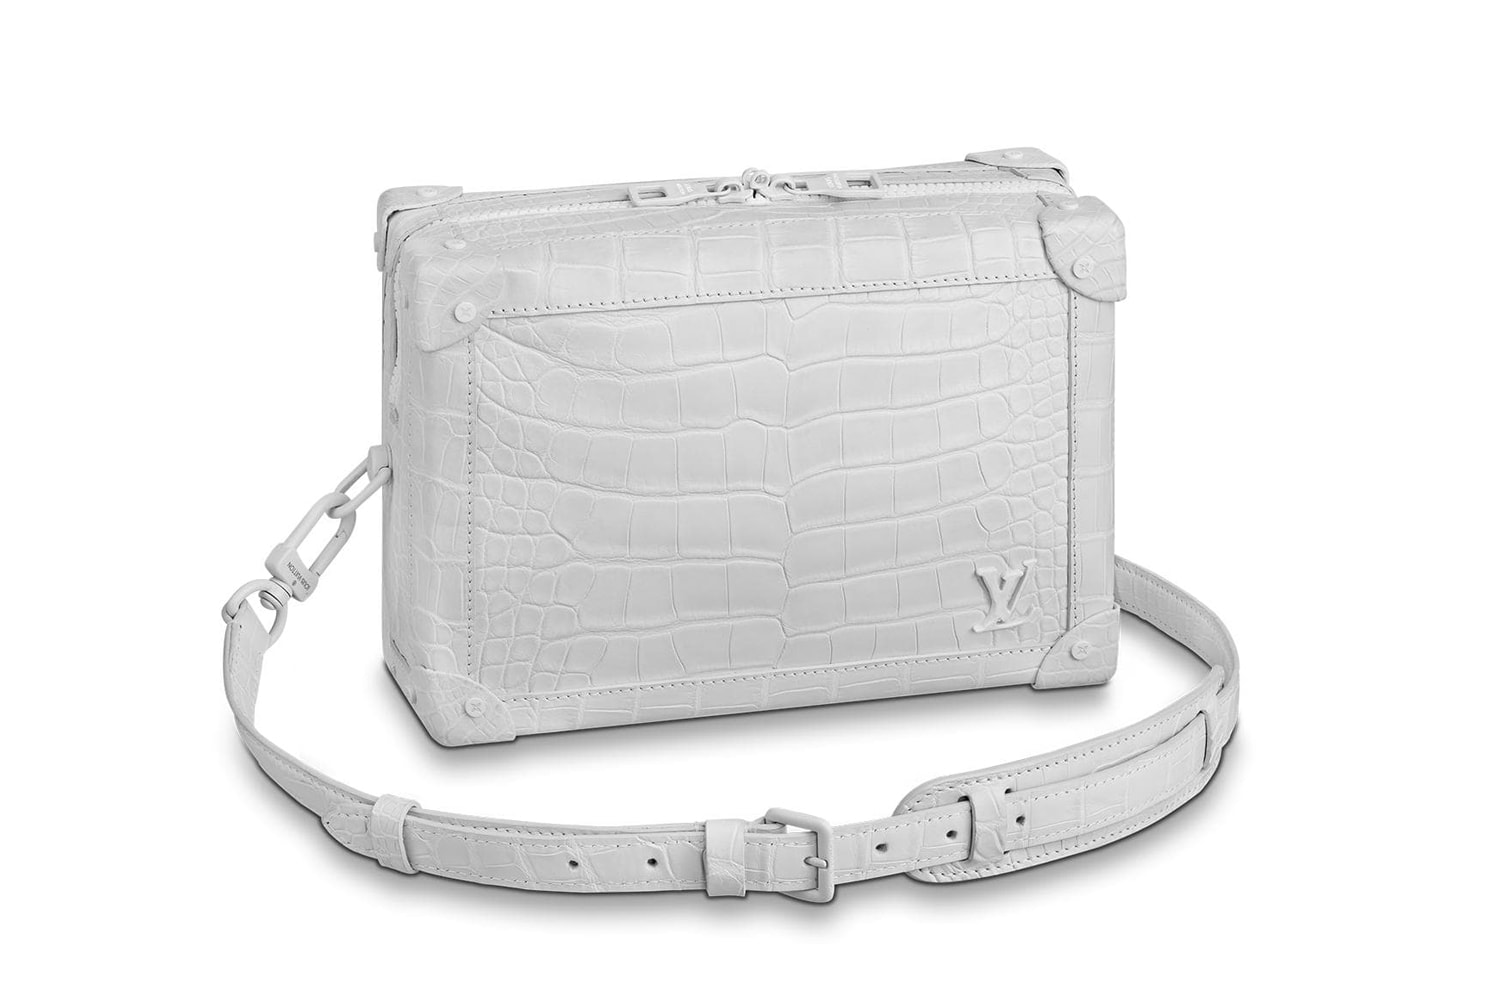 Louis Vuitton Soft Trunk Colorway Version Release  Virgil Abloh Bags Accessories Trunks Nicolas Ghesquière Petite Malle